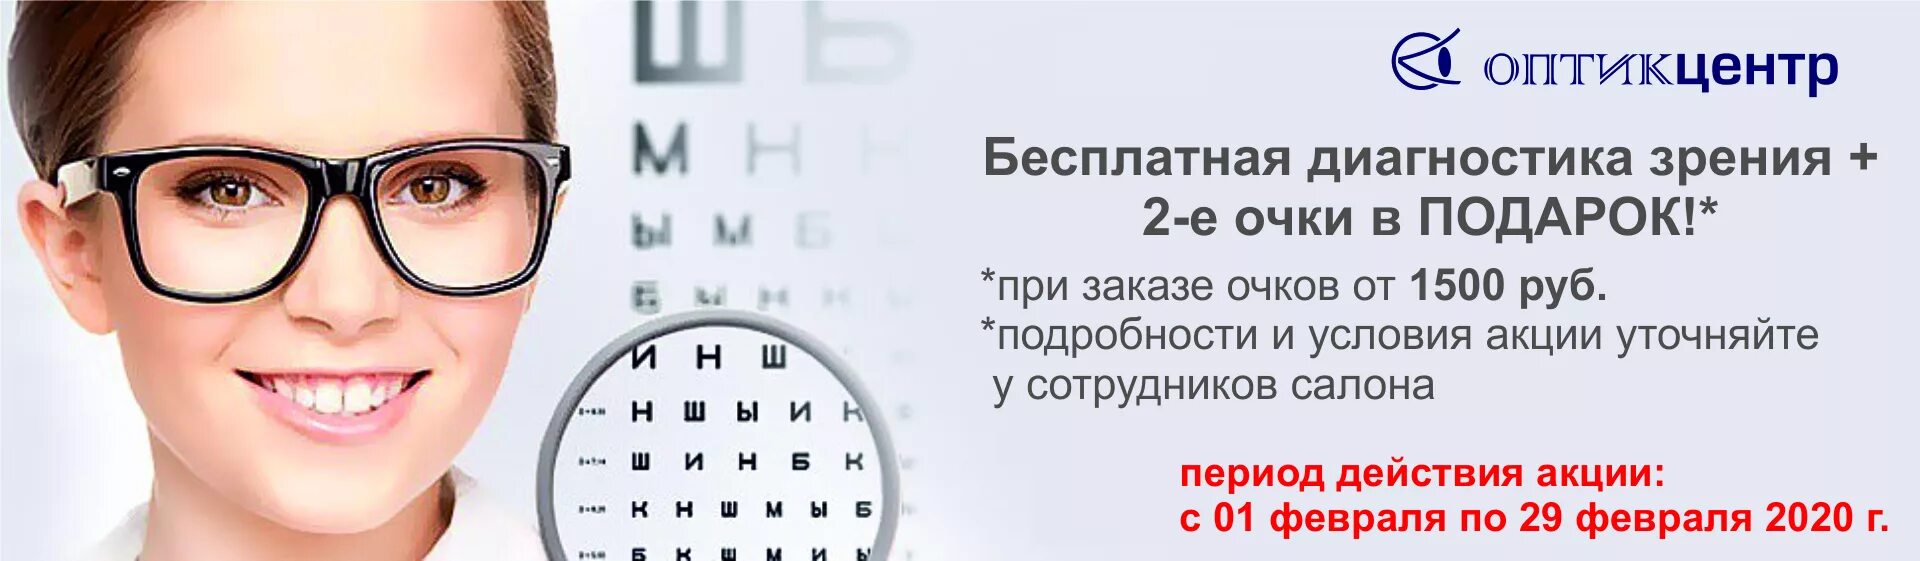 Проверка зрения реклама. Очки для зрения баннер. Реклама очков для зрения. Очки офтальмолога.